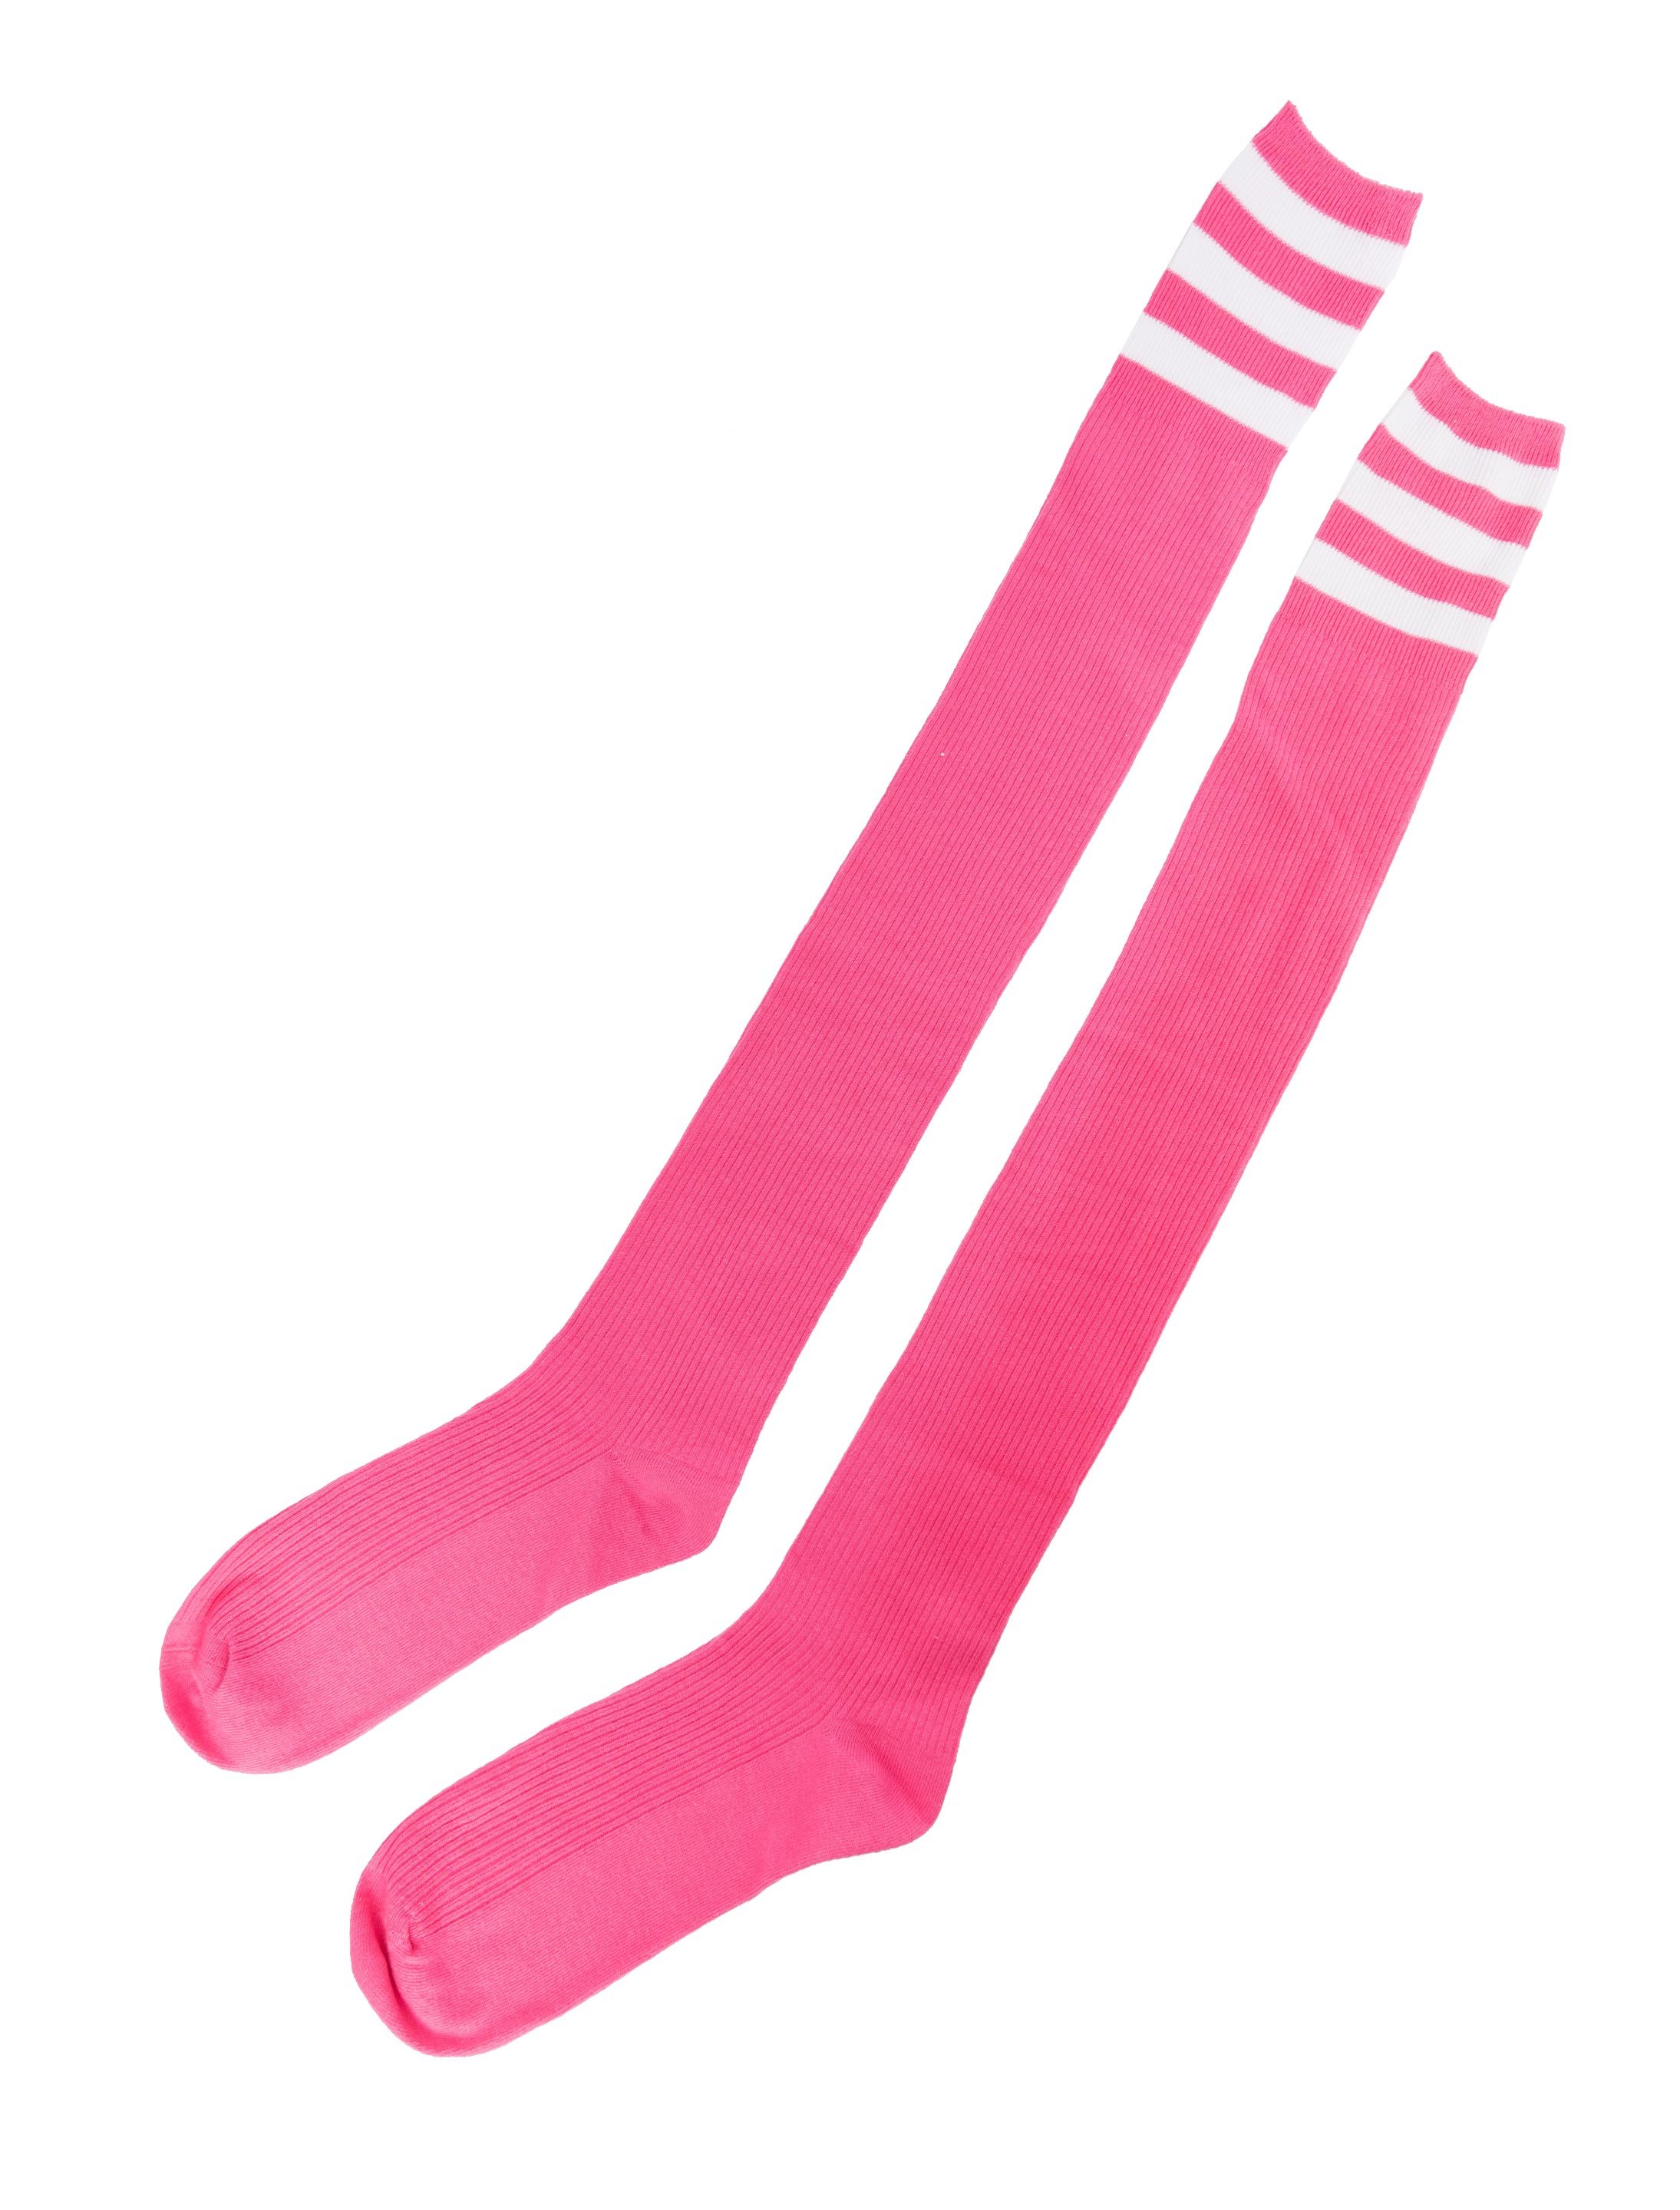 Kniestrümpfe mit Streifen pink/weiß one size